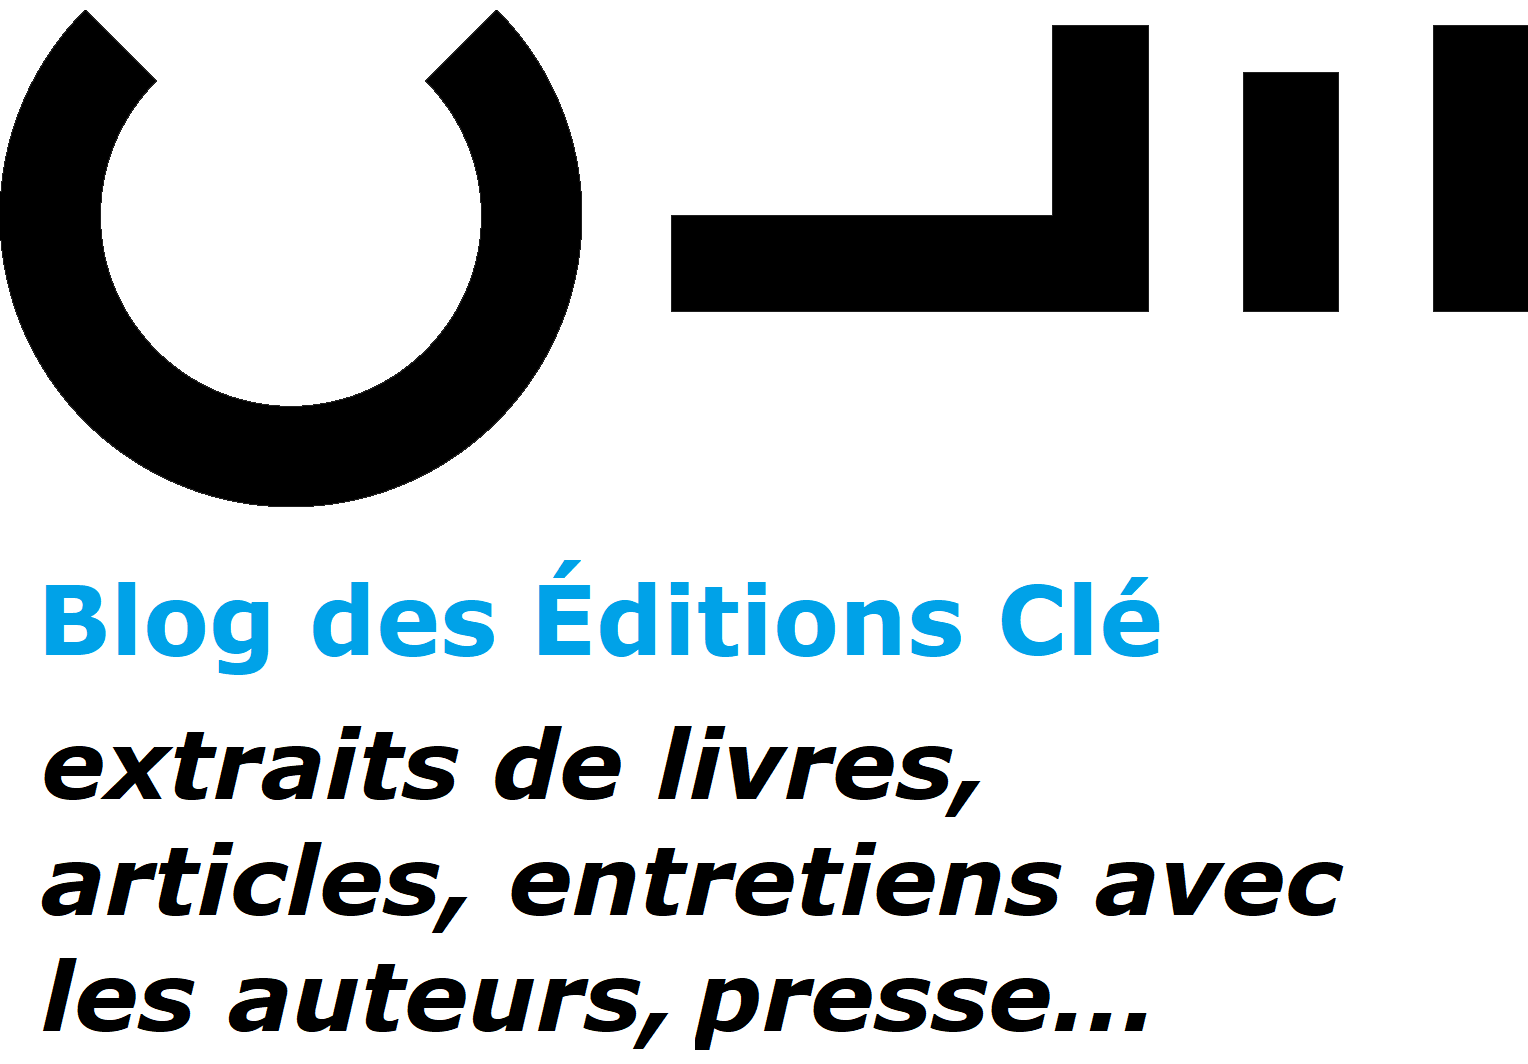 Blog des Éditions Clé